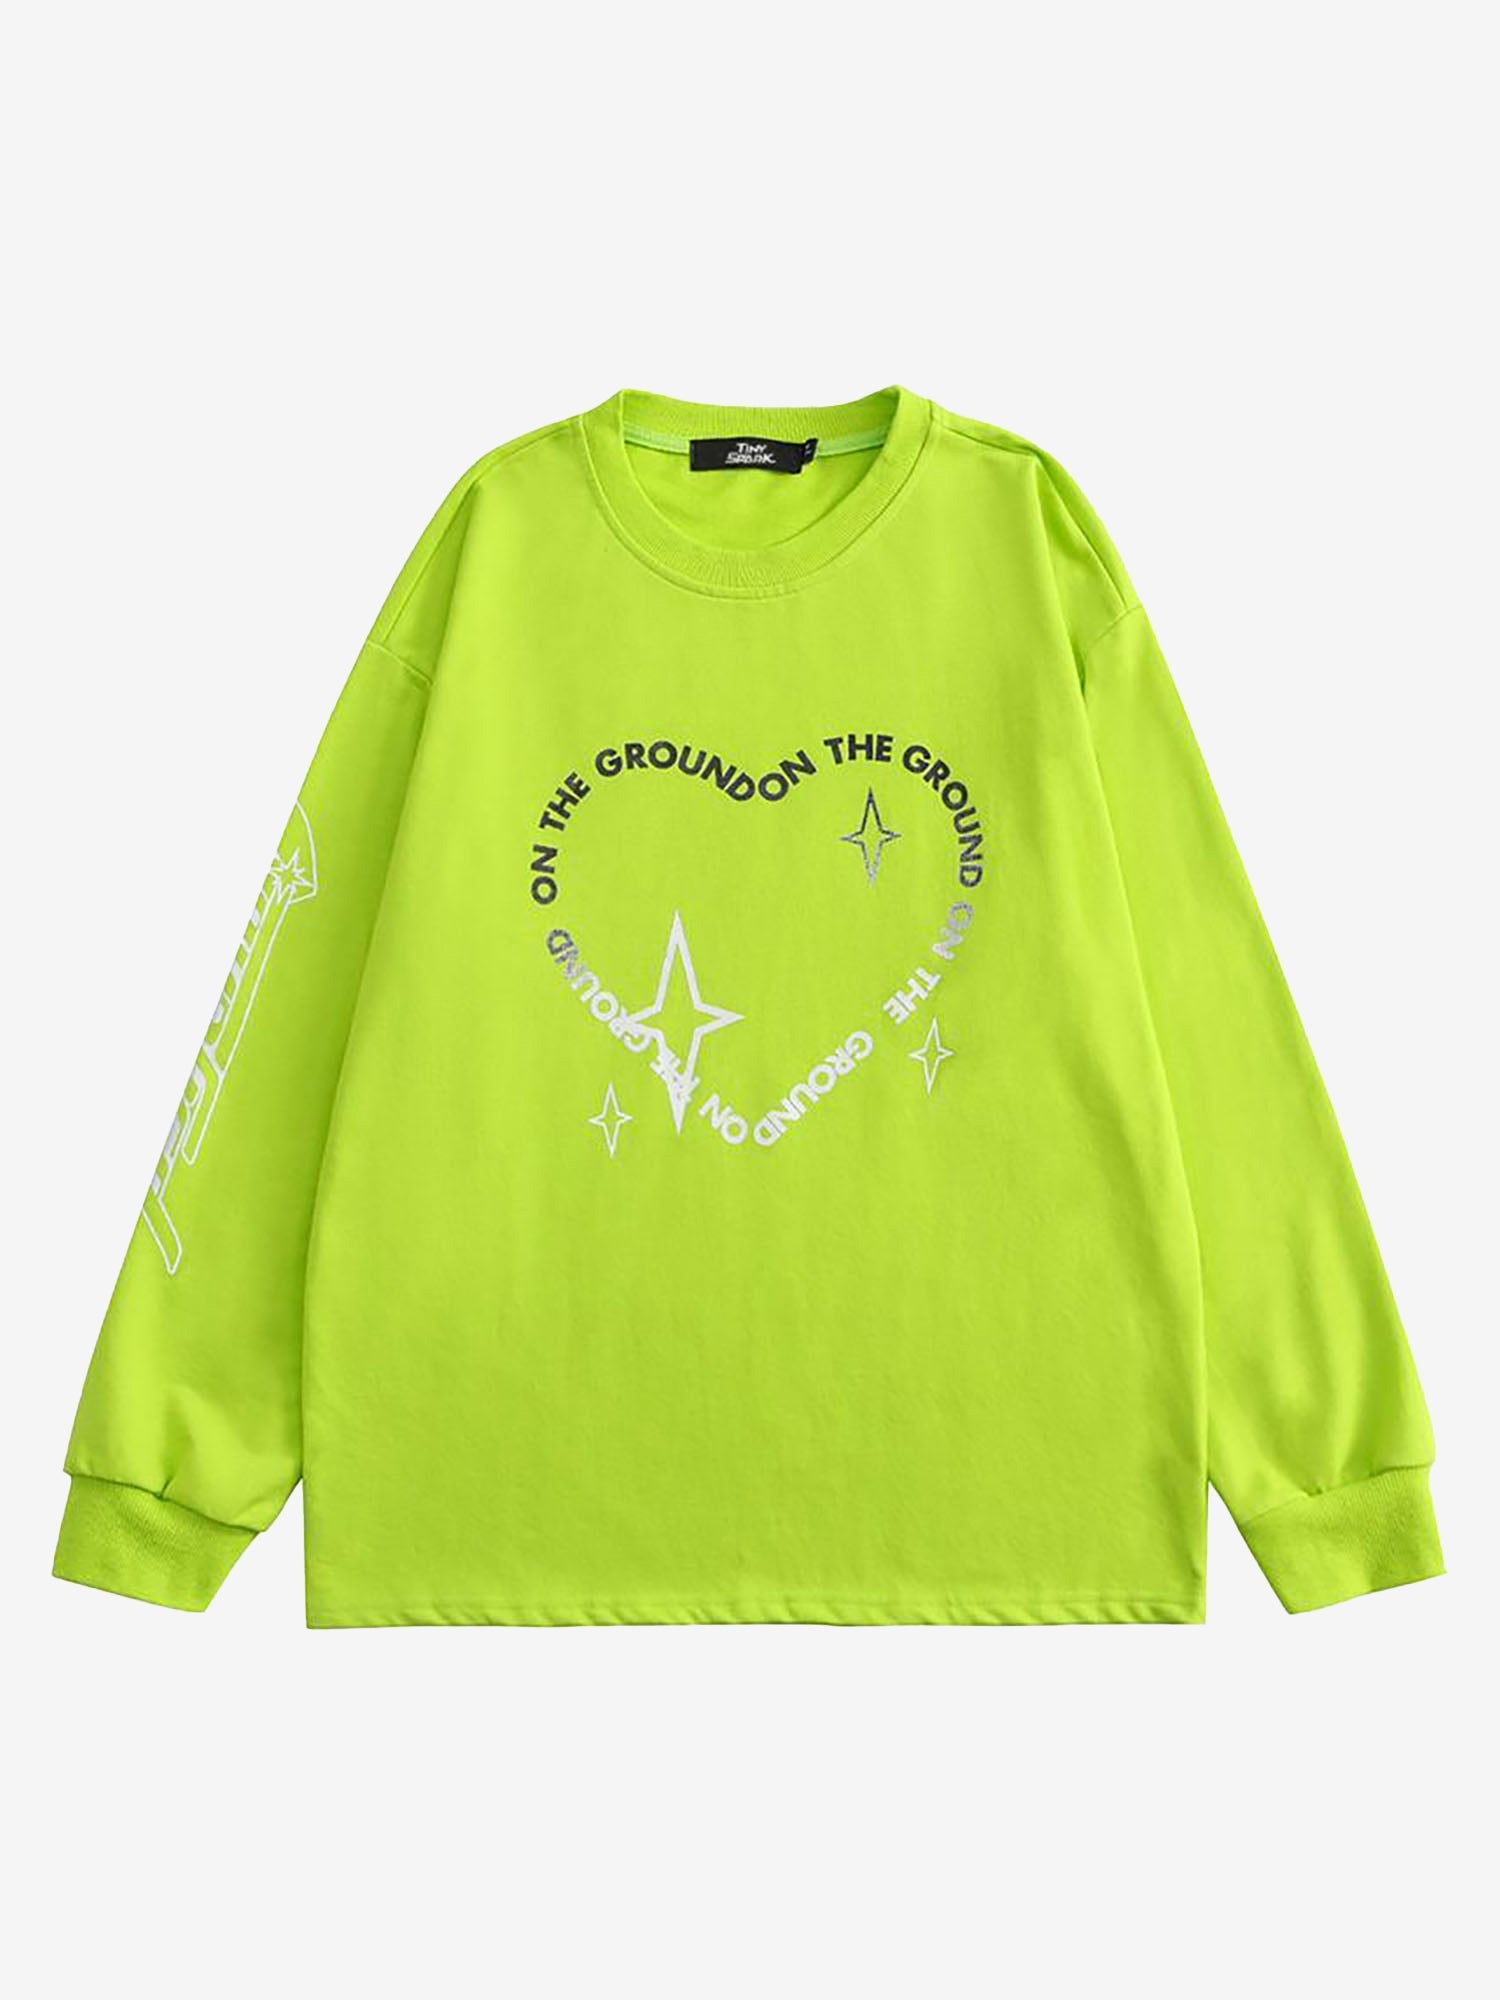 Justnotag Coeur lettre transition de couleur Sweatshirts à manches longues